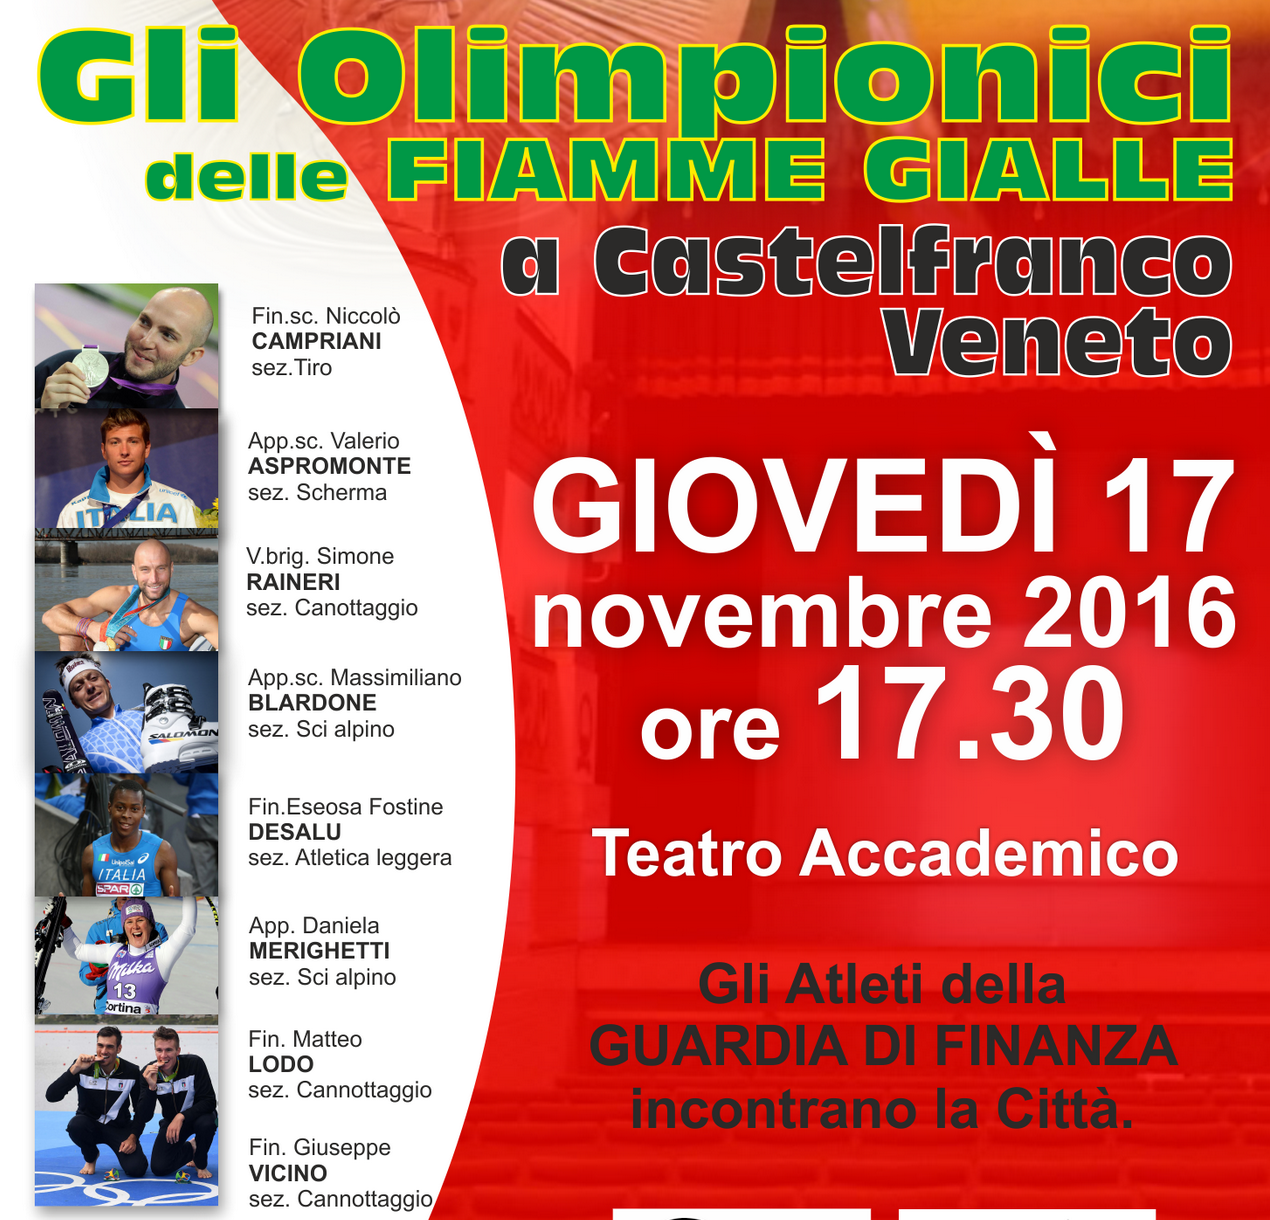 Immagine per Gli Olimpionici delle Fiamme Gialle a Castelfranco Veneto giovedì 17 novembre